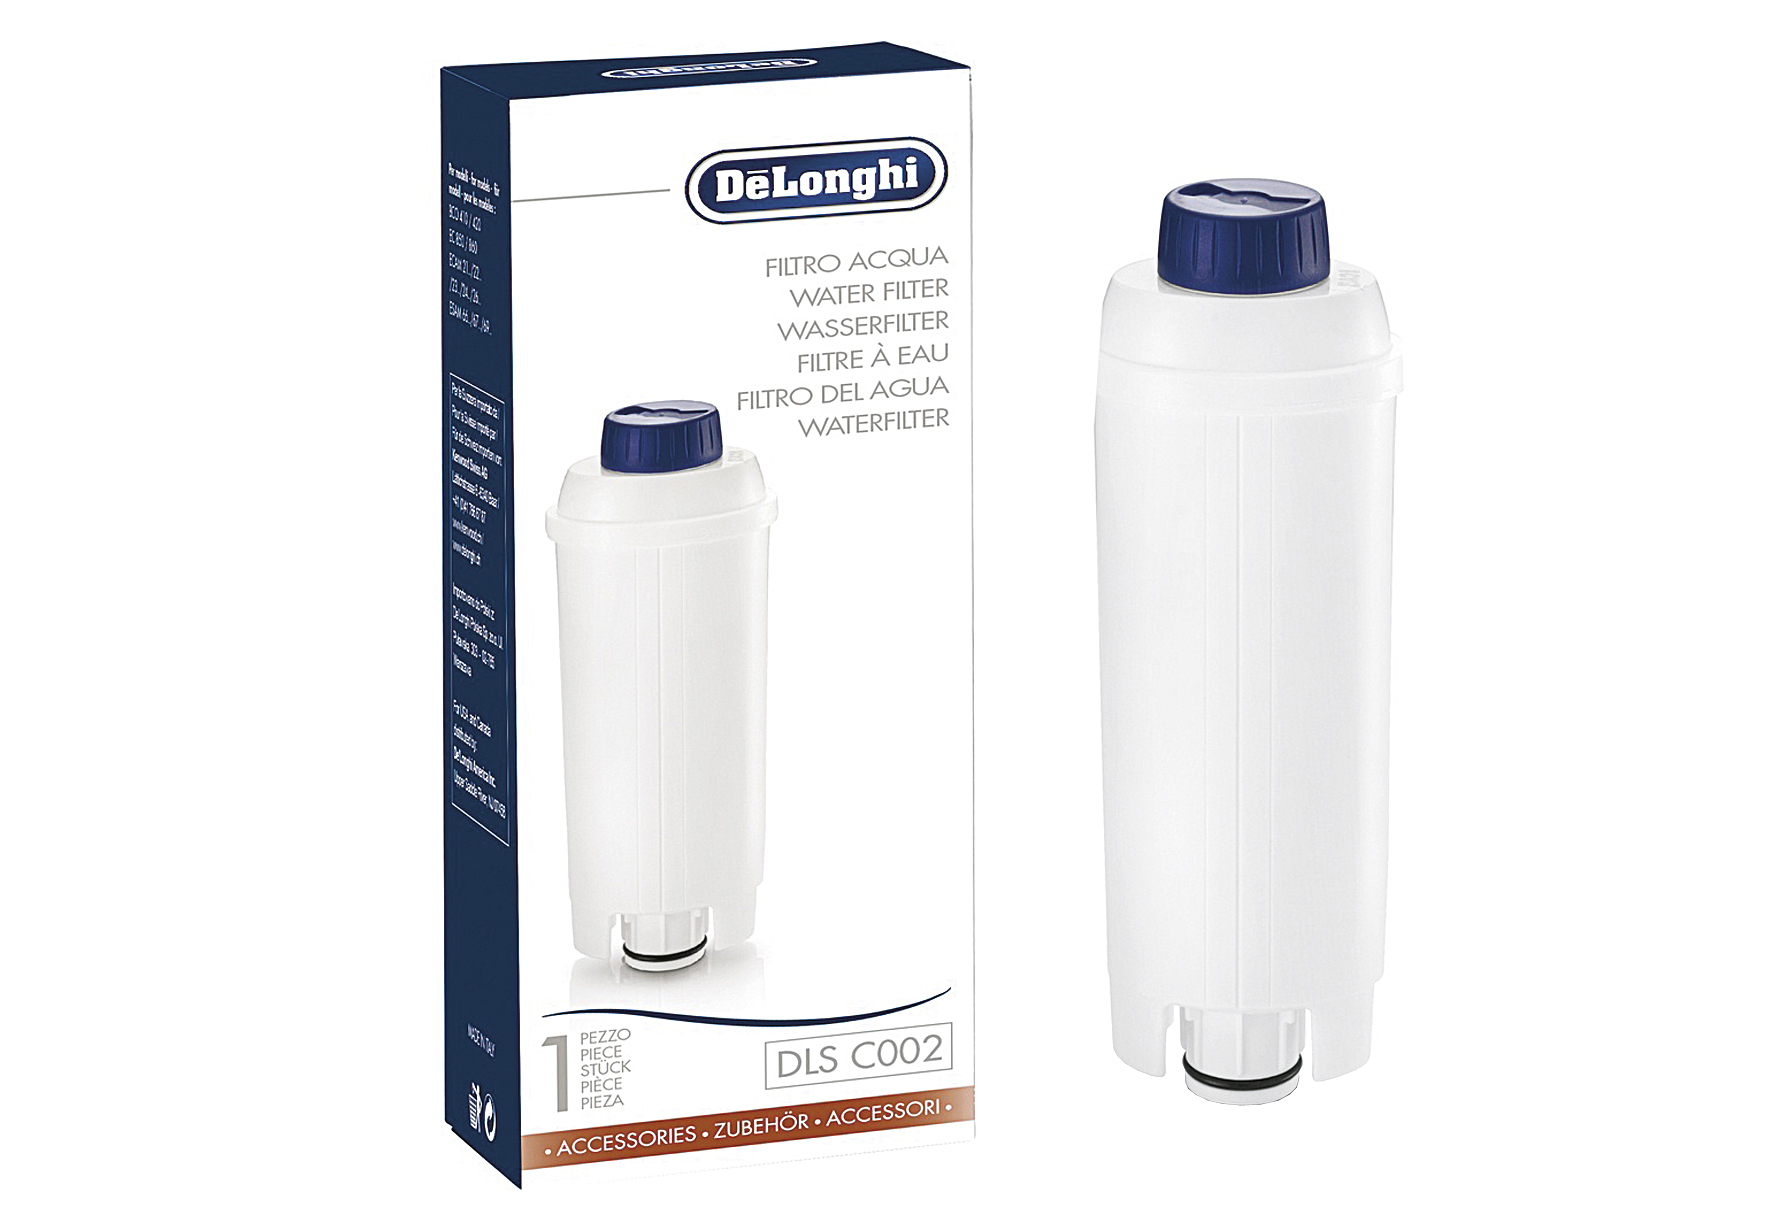 DELONGHI Wasserfilter DLS C002 Wasserfilter für Kaffee-/Espressomaschinen